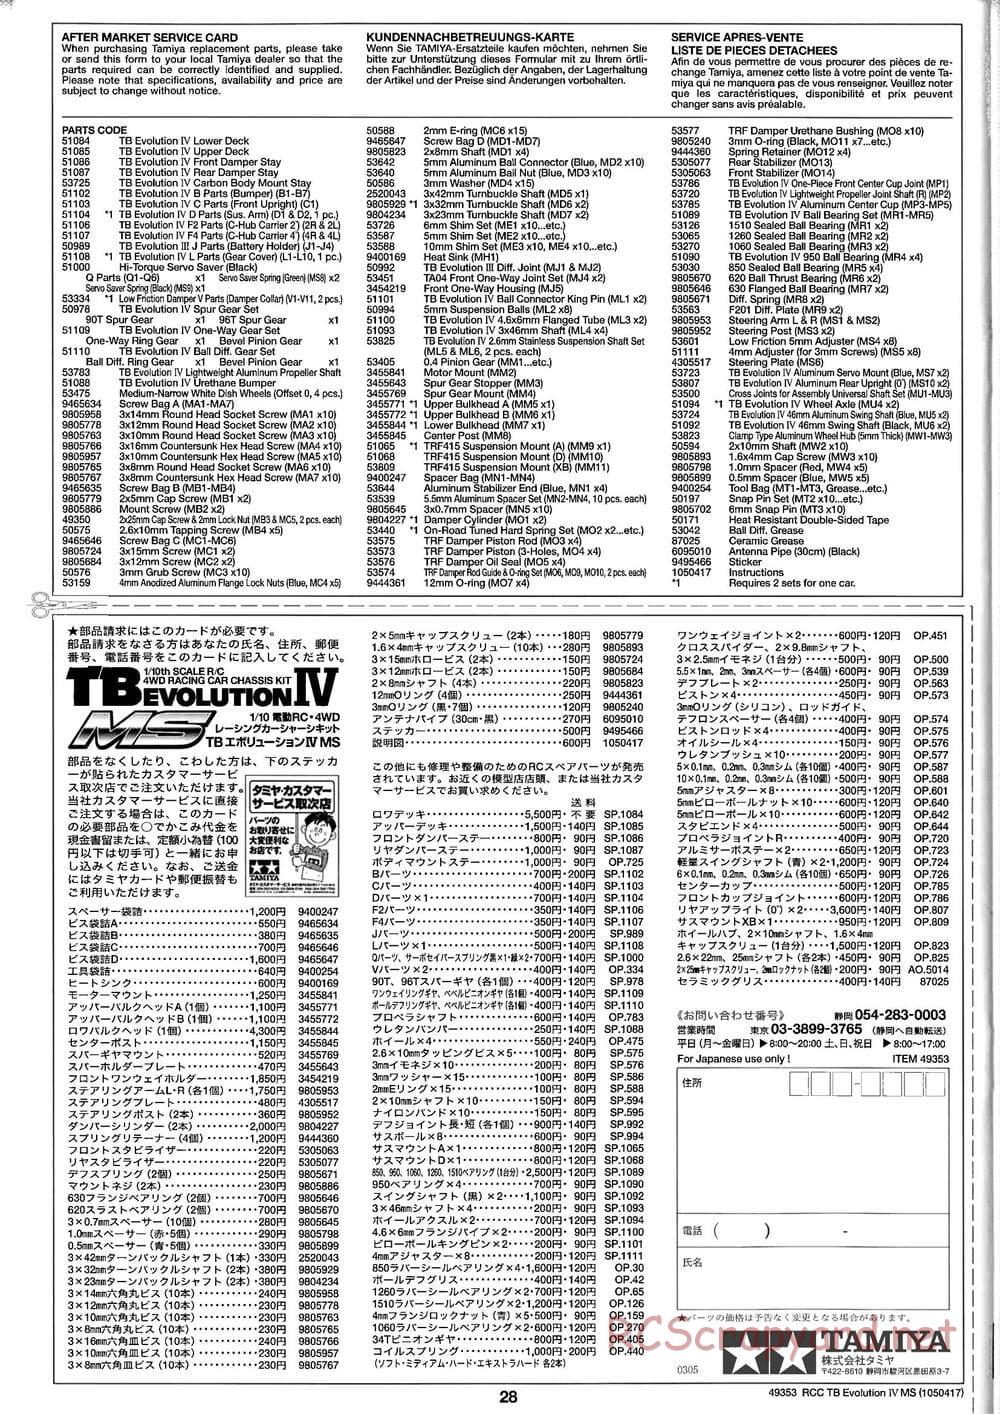 Tamiya - TB Evolution IV MS Chassis - Manual - Page 28